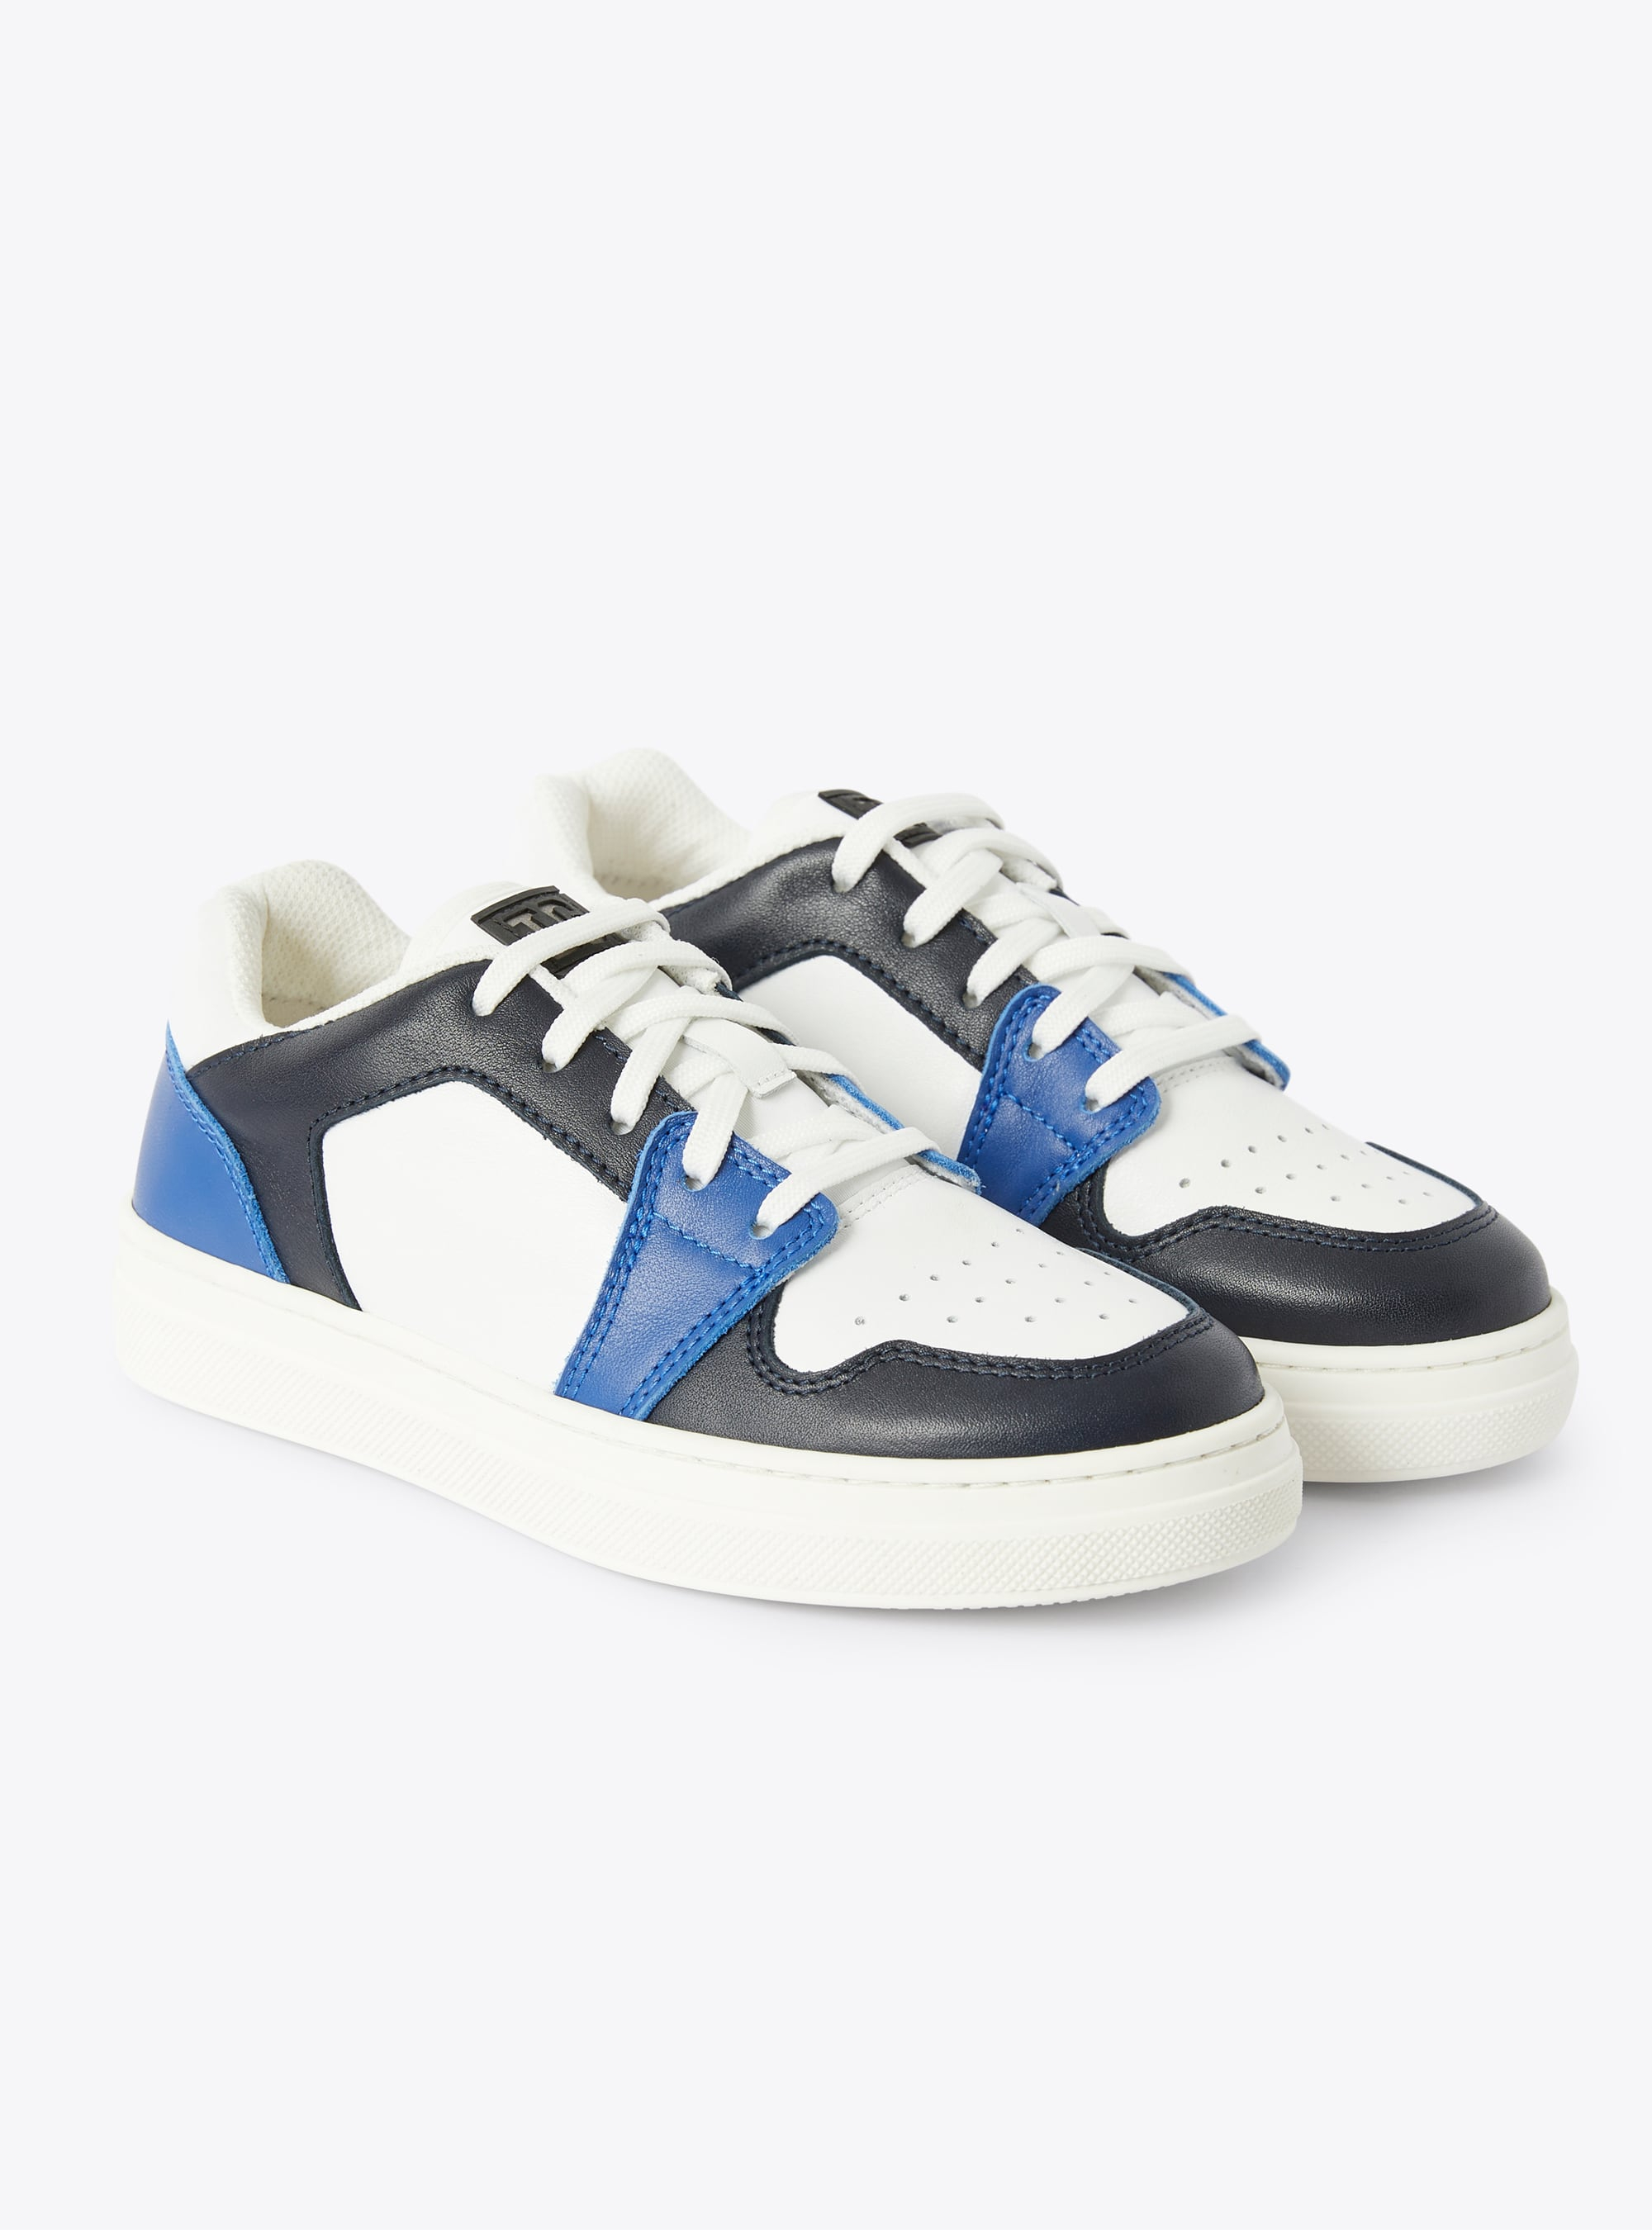 Sneaker IG low top bicolore cobalto e blu - Blu | Il Gufo